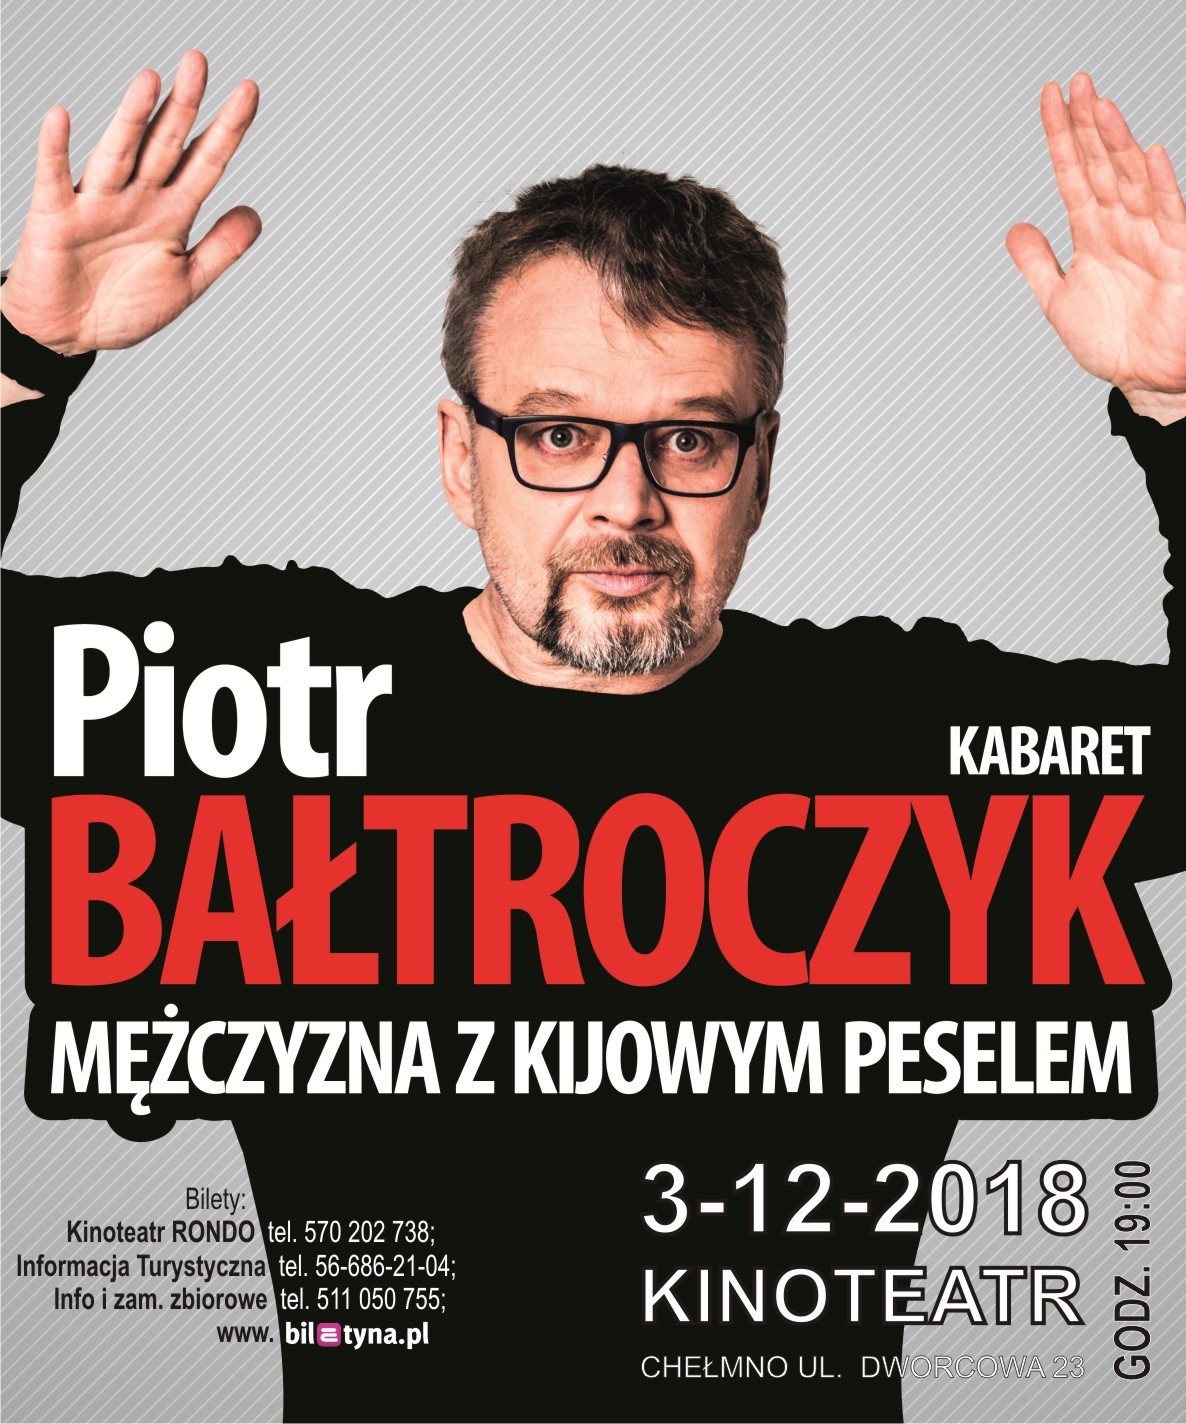 Kabaret Piotr Bałtroczyk